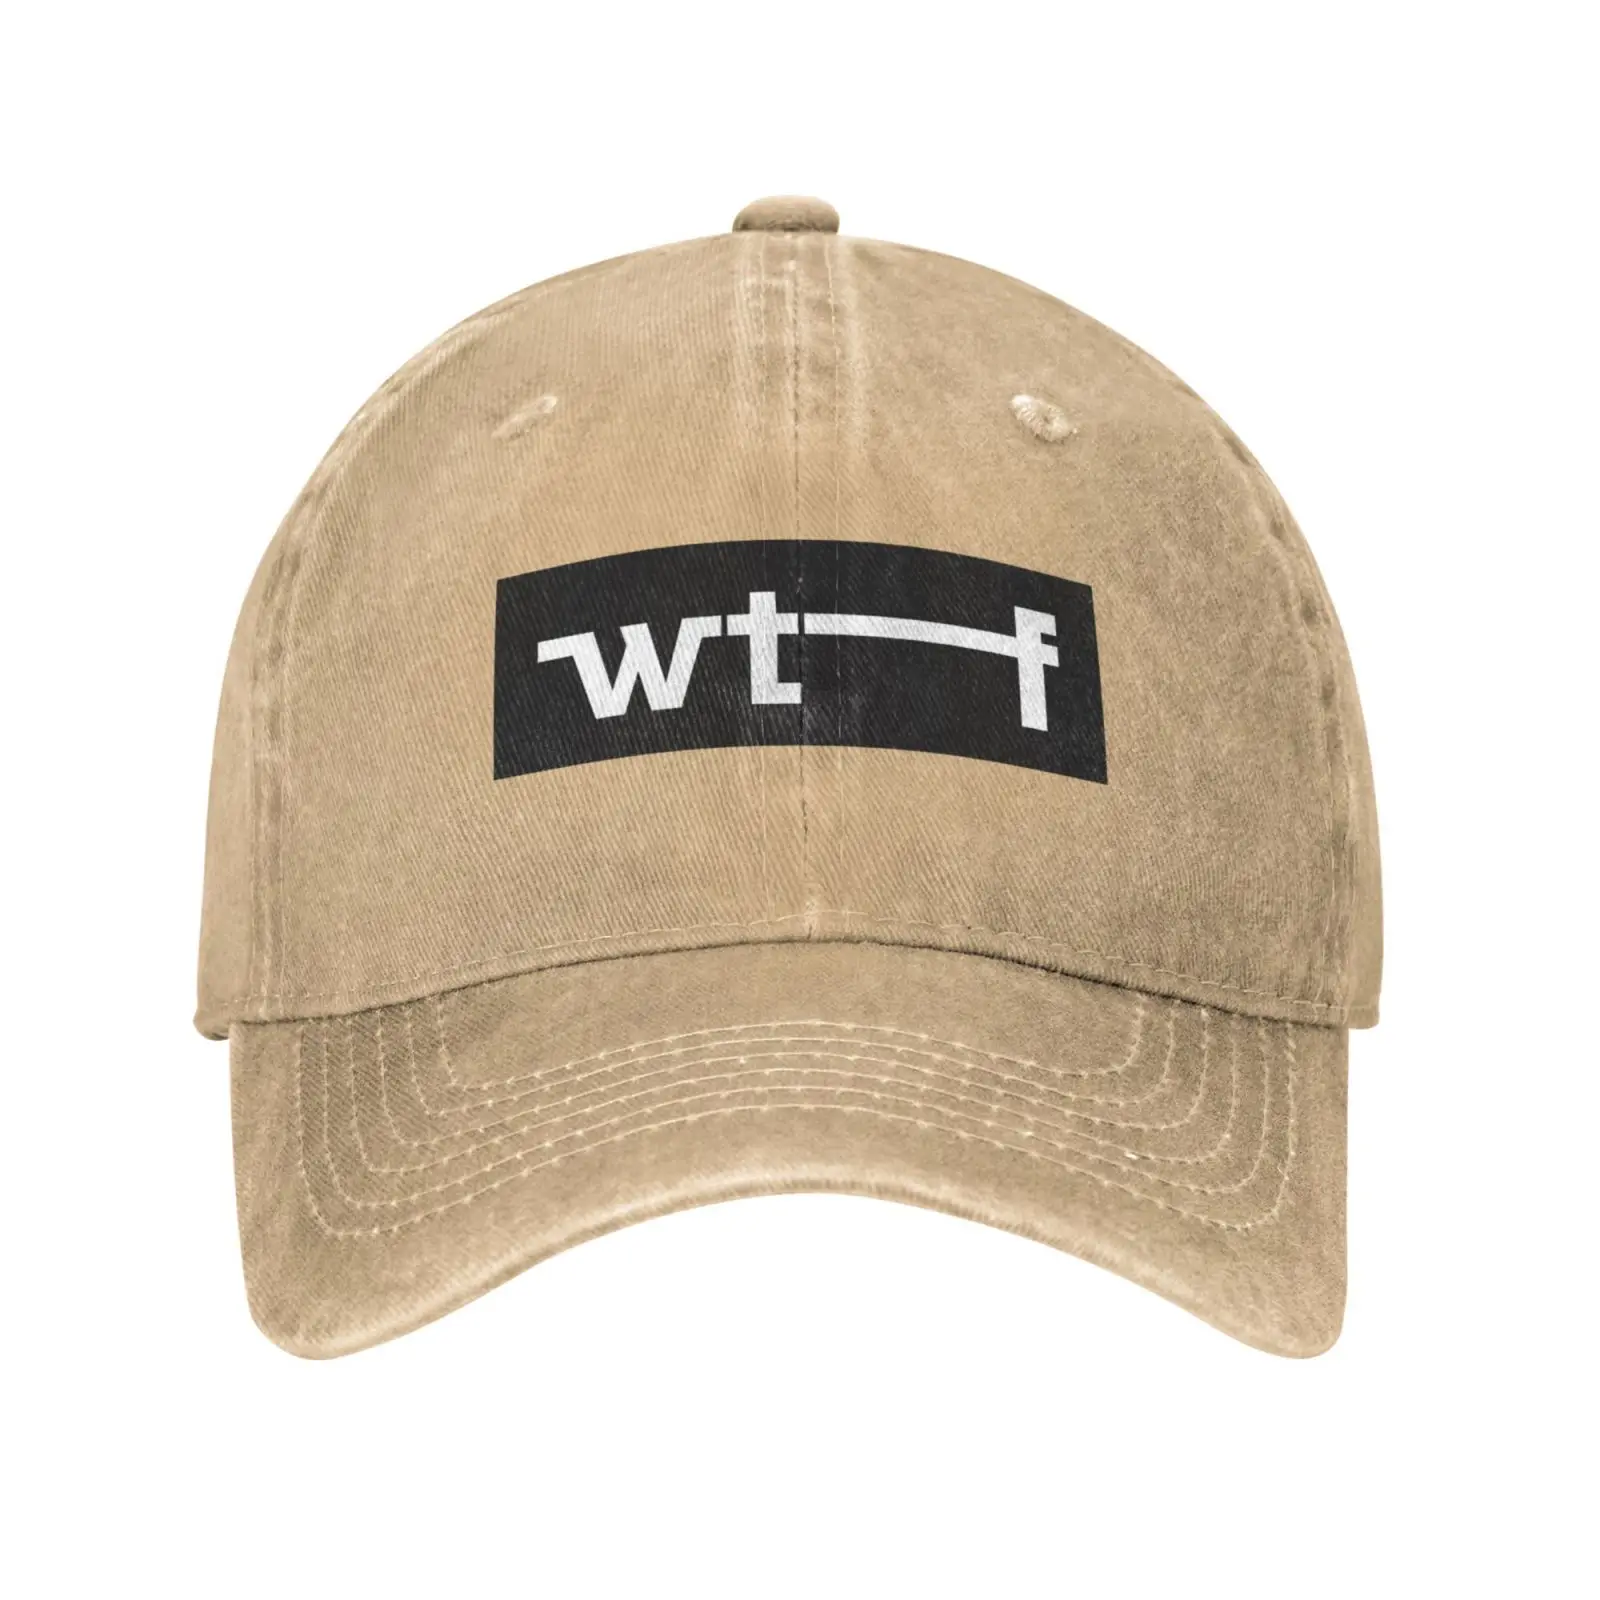 Повседневная джинсовая кепка с графическим принтом WTF, вязаная шапка, бейсболка